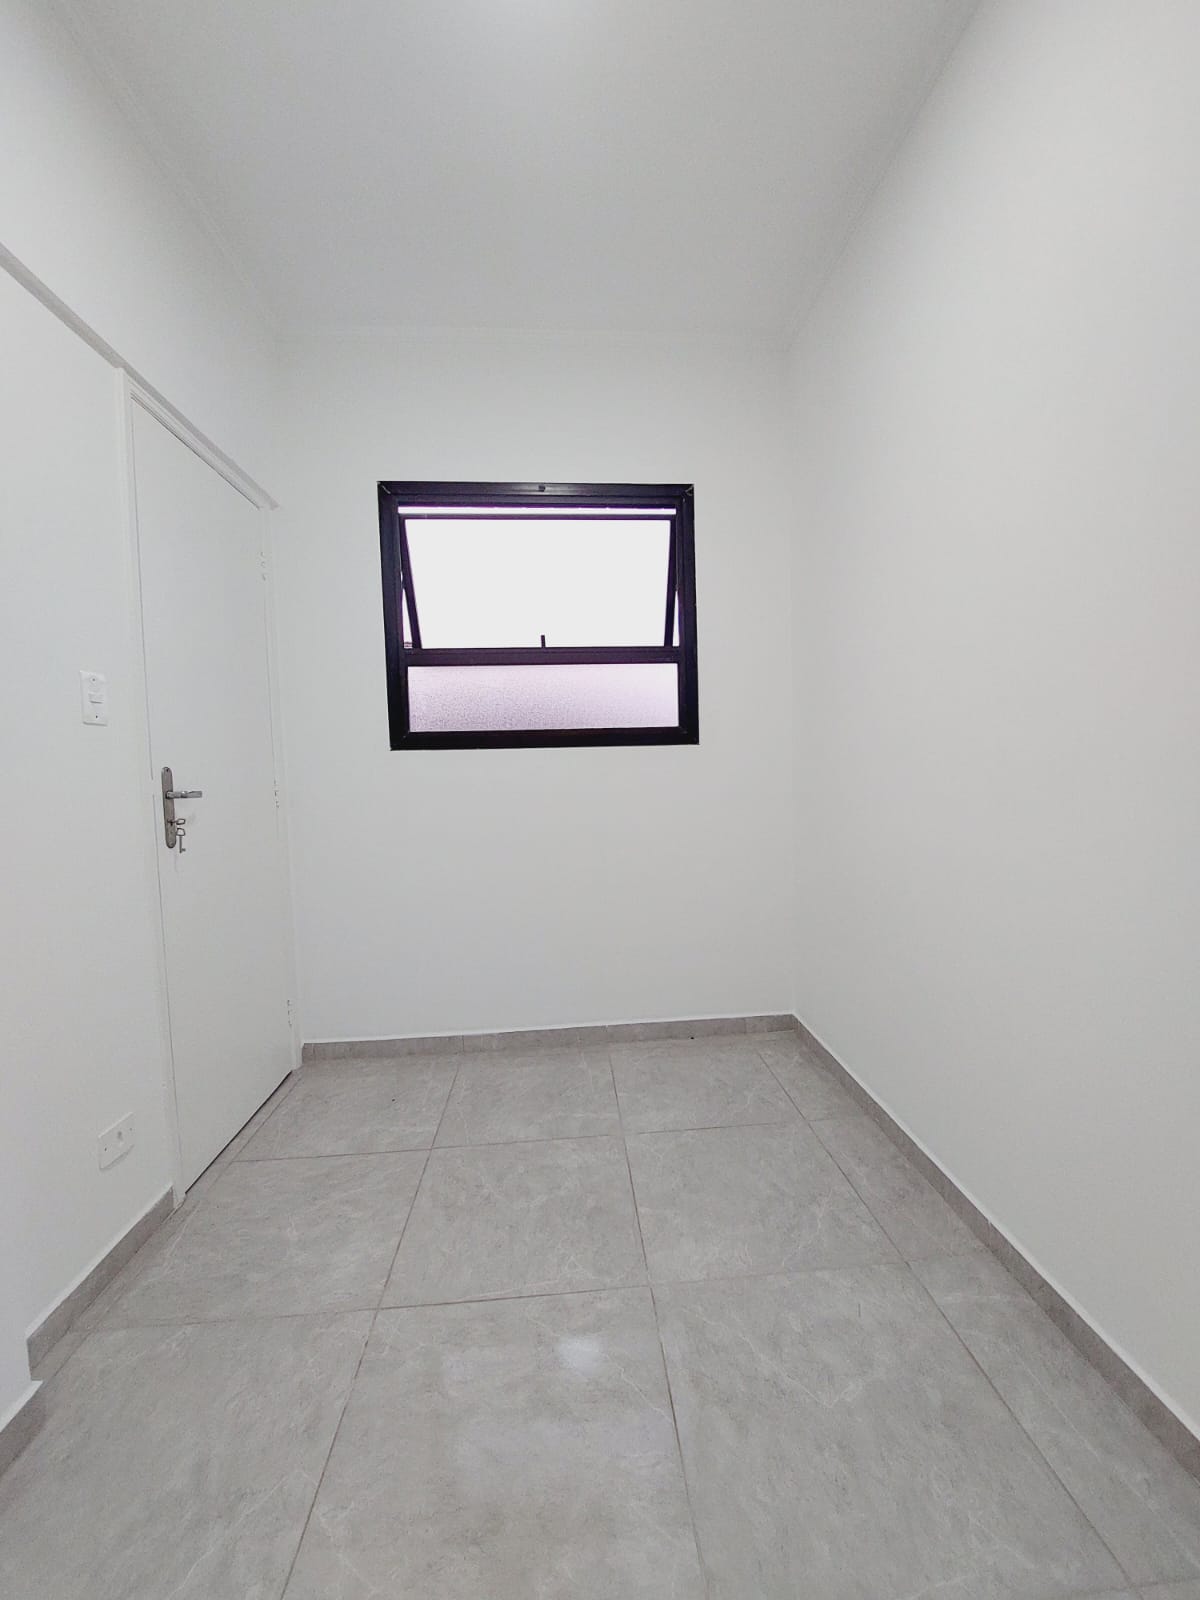 Foto do Imóvel - Lindo Apartamento 02 dorms c/ dep. na Aparecida em Santos SP